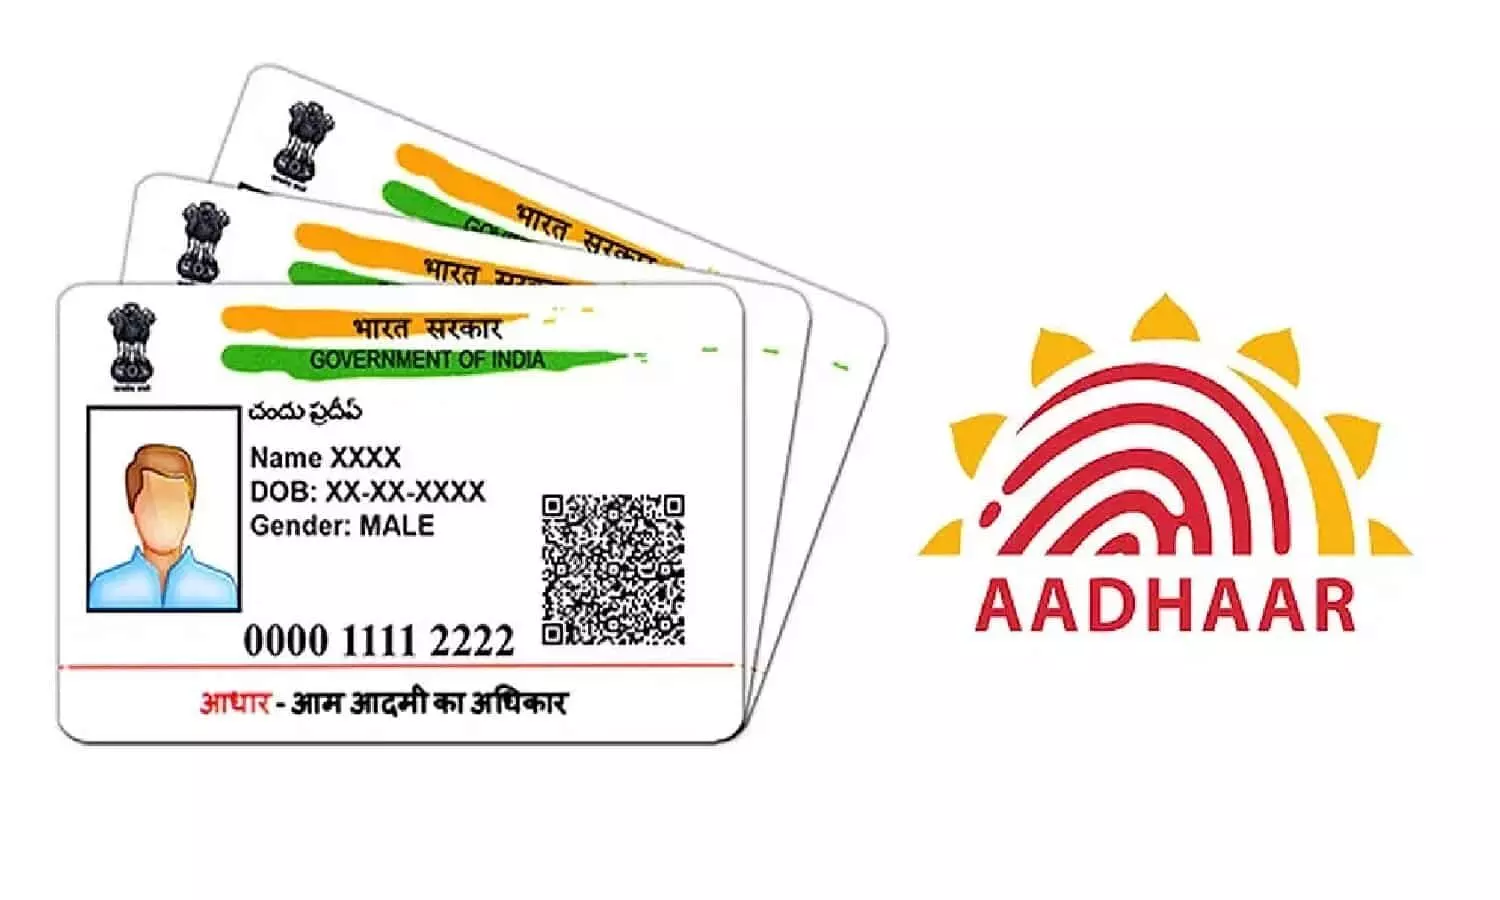 Aadhaar Card: आधार कार्ड में मोबाइल नंबर अपडेट को लेकर बड़ा बदलाव, 1 अक्टूबर से लागू होगा नया नियम